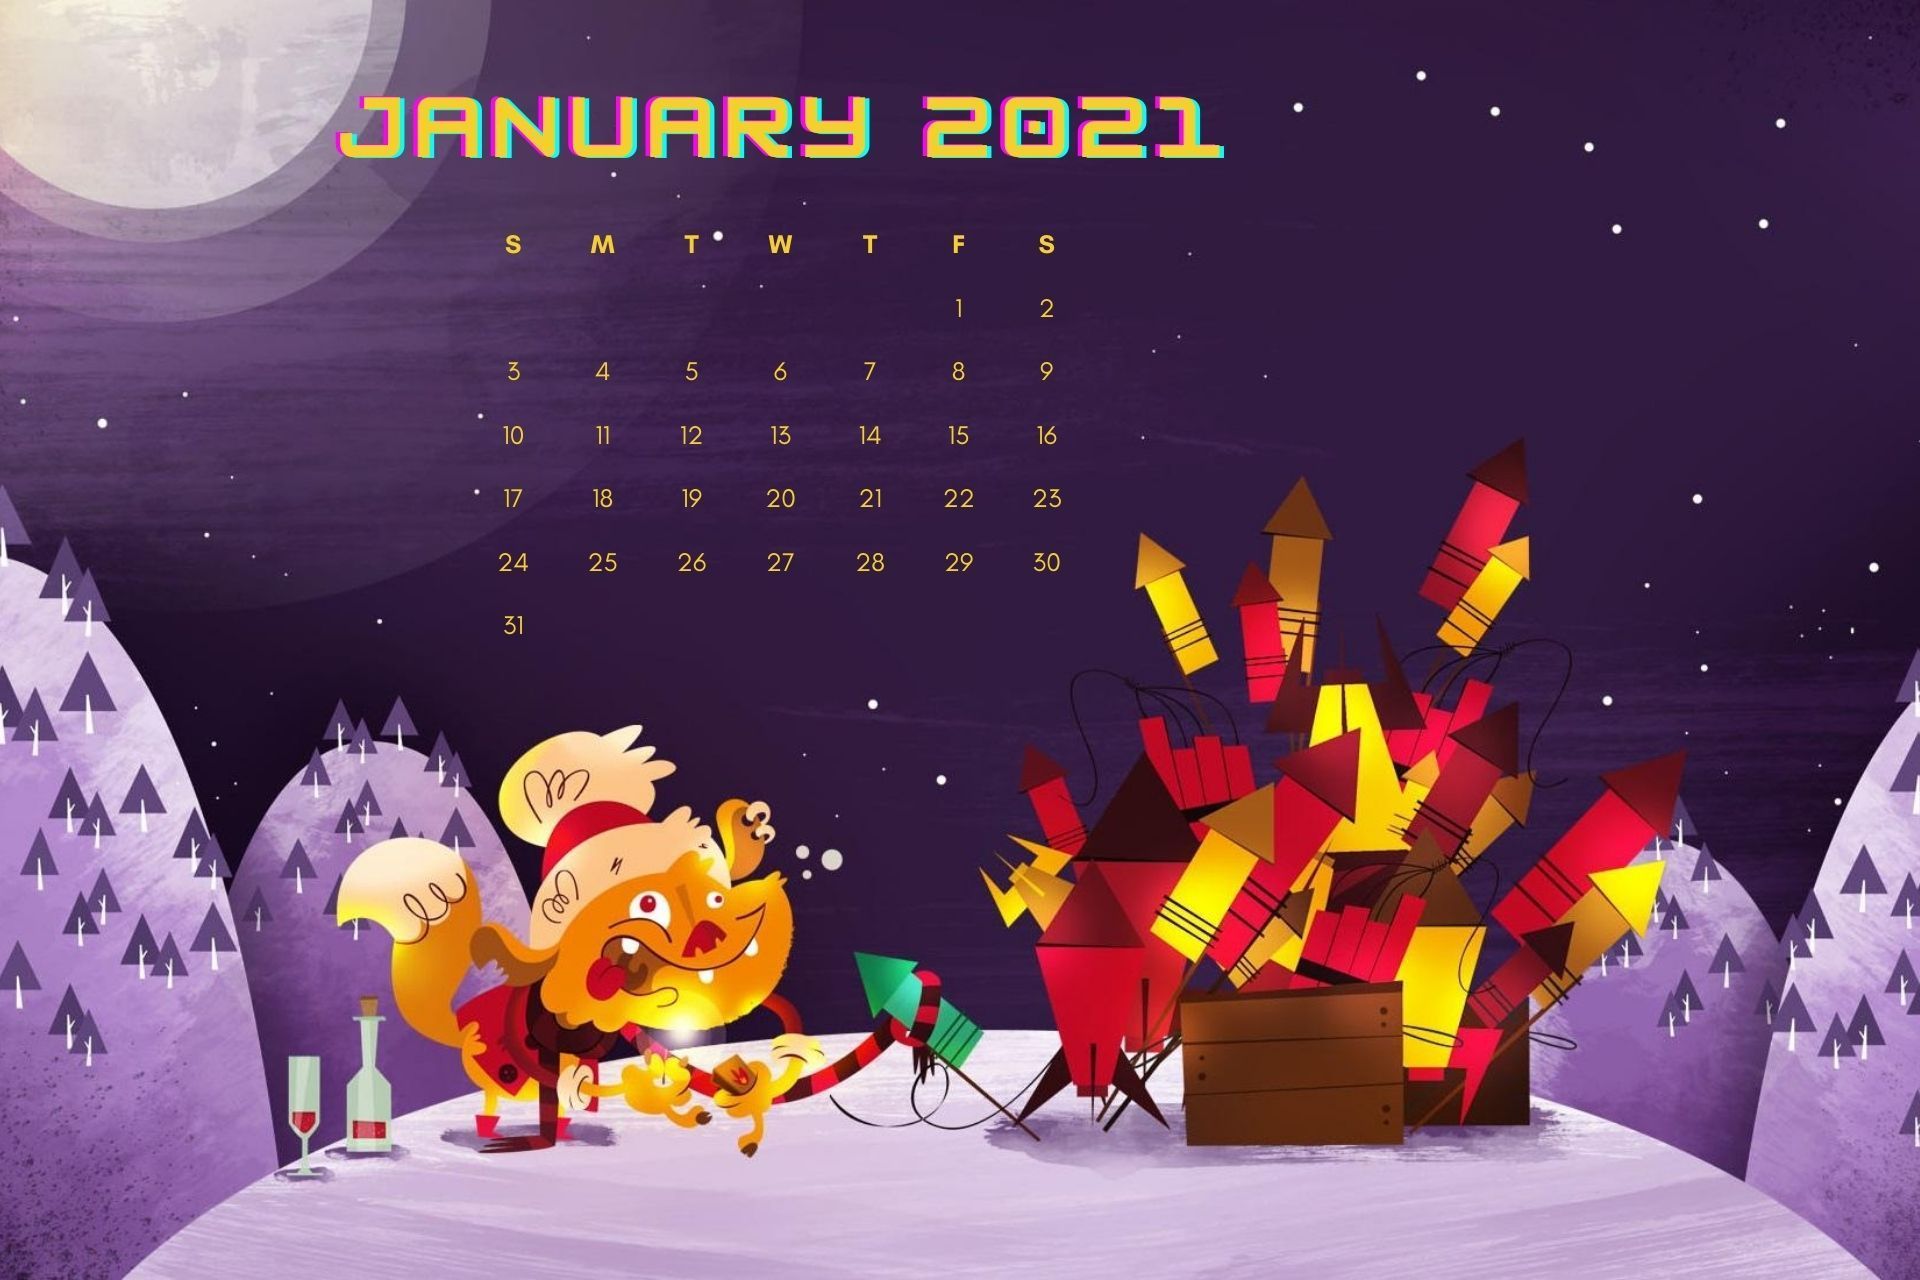 Beautiful January 2021 Calendar Wallpaper for desktop. Calendar wallpaper, Desktop calendar, Wallpaper